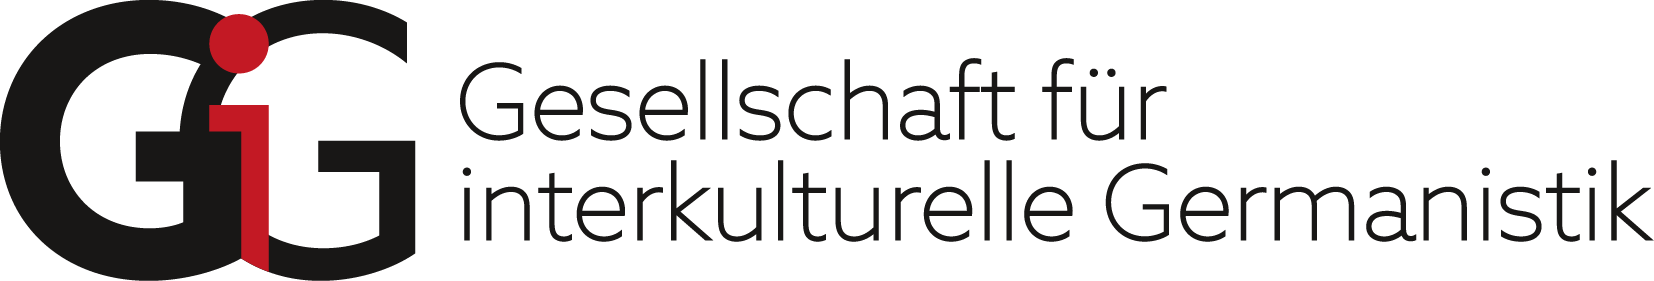 Logo der Gesellschaft für interkulturelle Germanistik